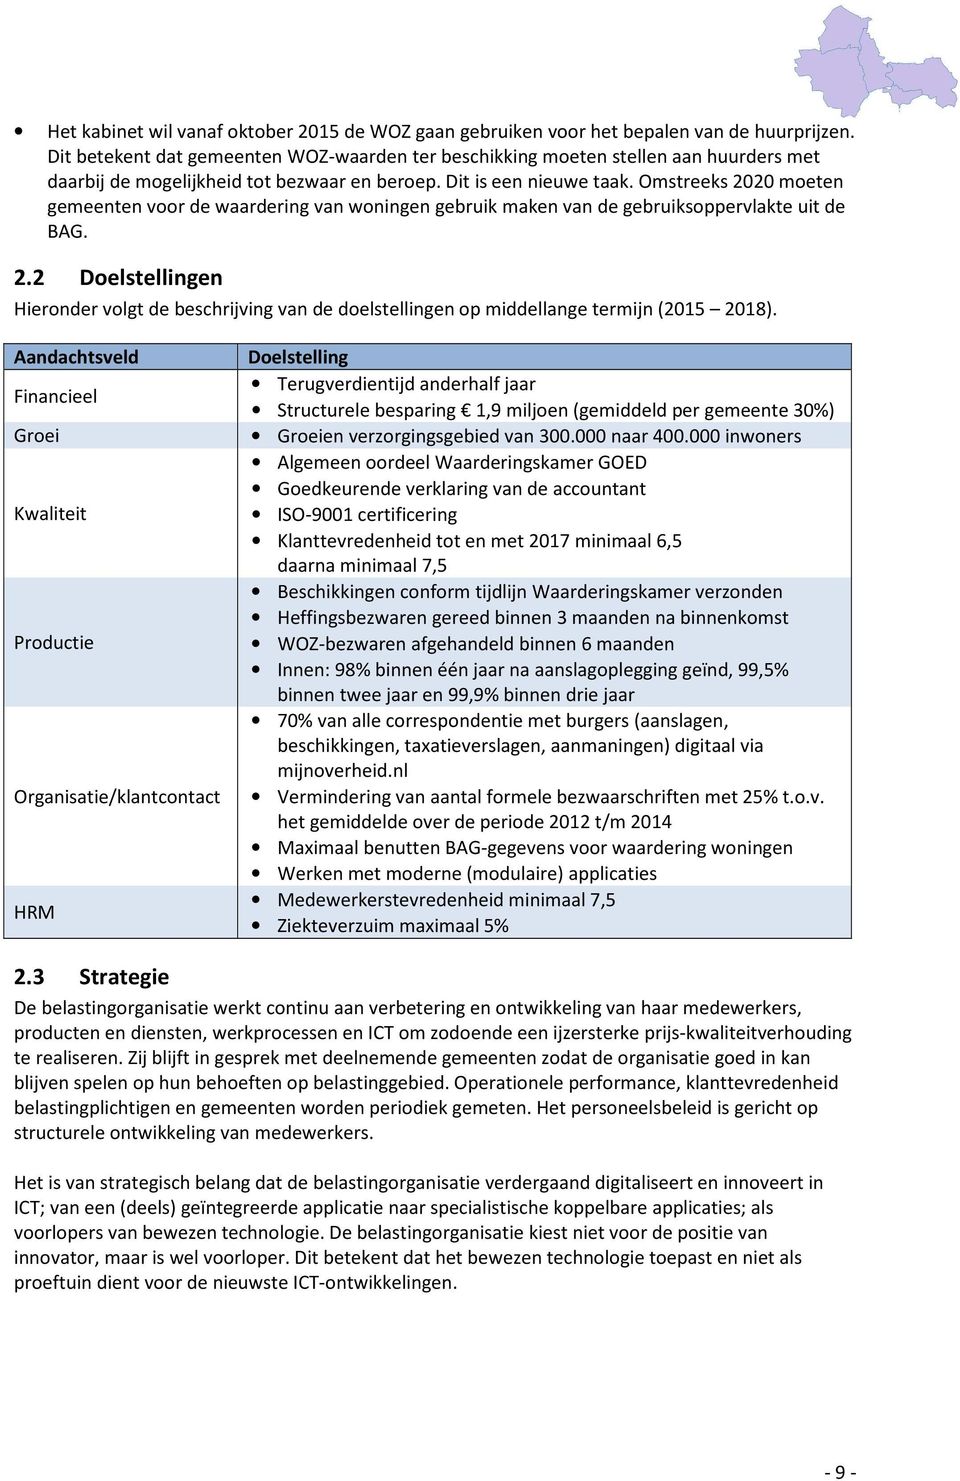 Omstreeks 2020 moeten gemeenten voor de waardering van woningen gebruik maken van de gebruiksoppervlakte uit de BAG. 2.2 Doelstellingen Hieronder volgt de beschrijving van de doelstellingen op middellange termijn (2015 2018).